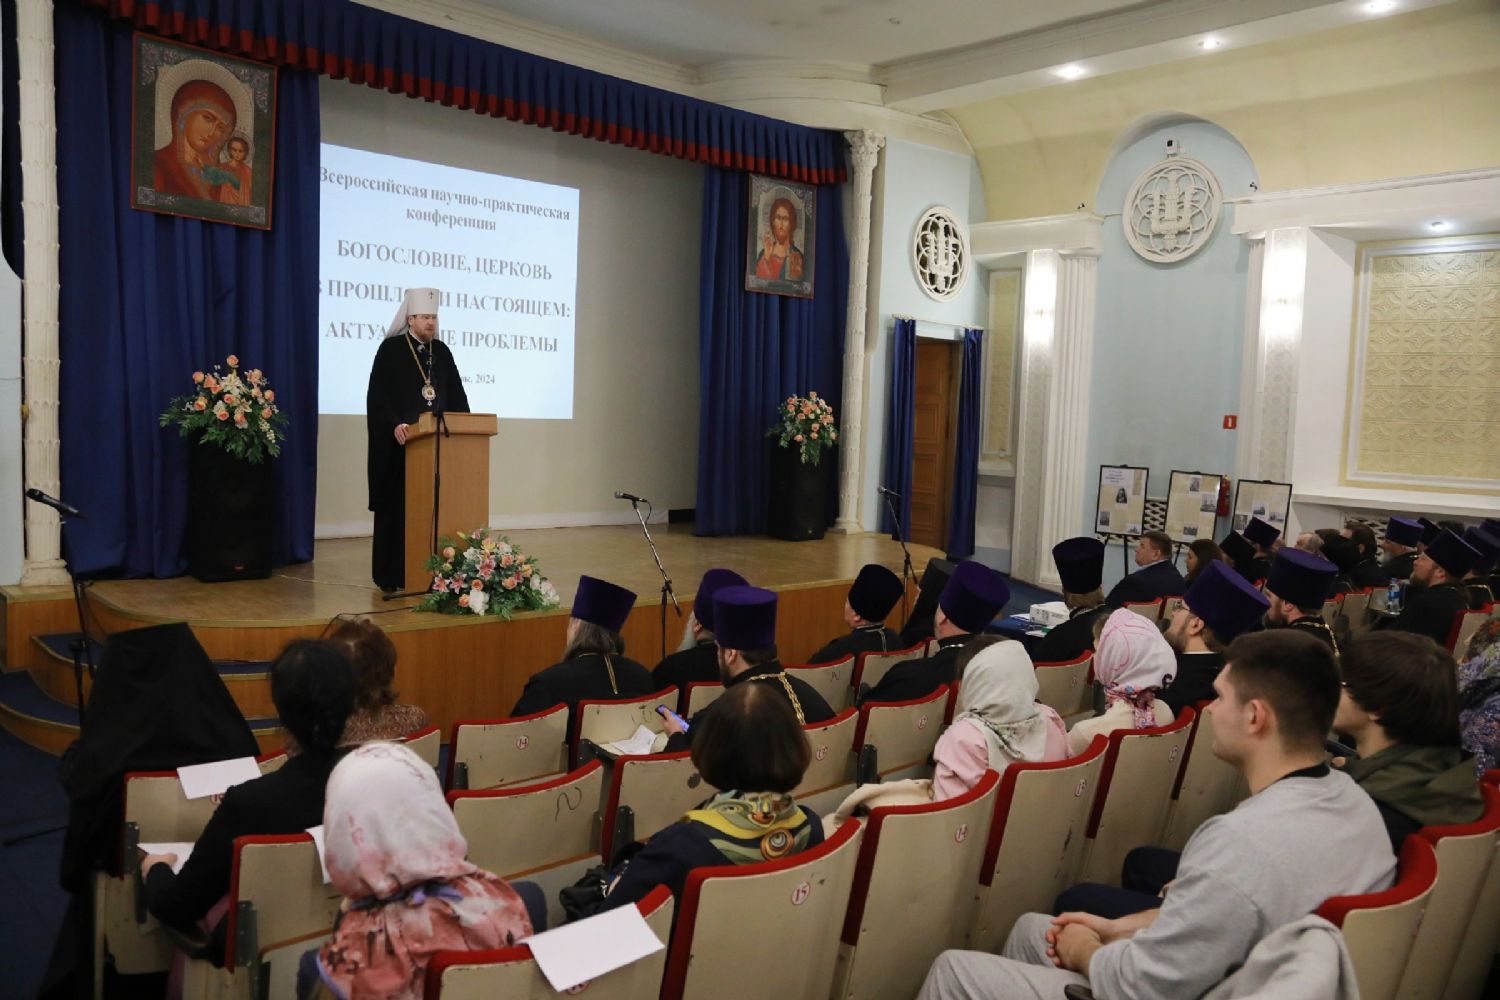 Состоялось пленарное заседание всероссийской научно-практической конференции «Богословие, Церковь в прошлом и настоящем: актуальные проблемы»